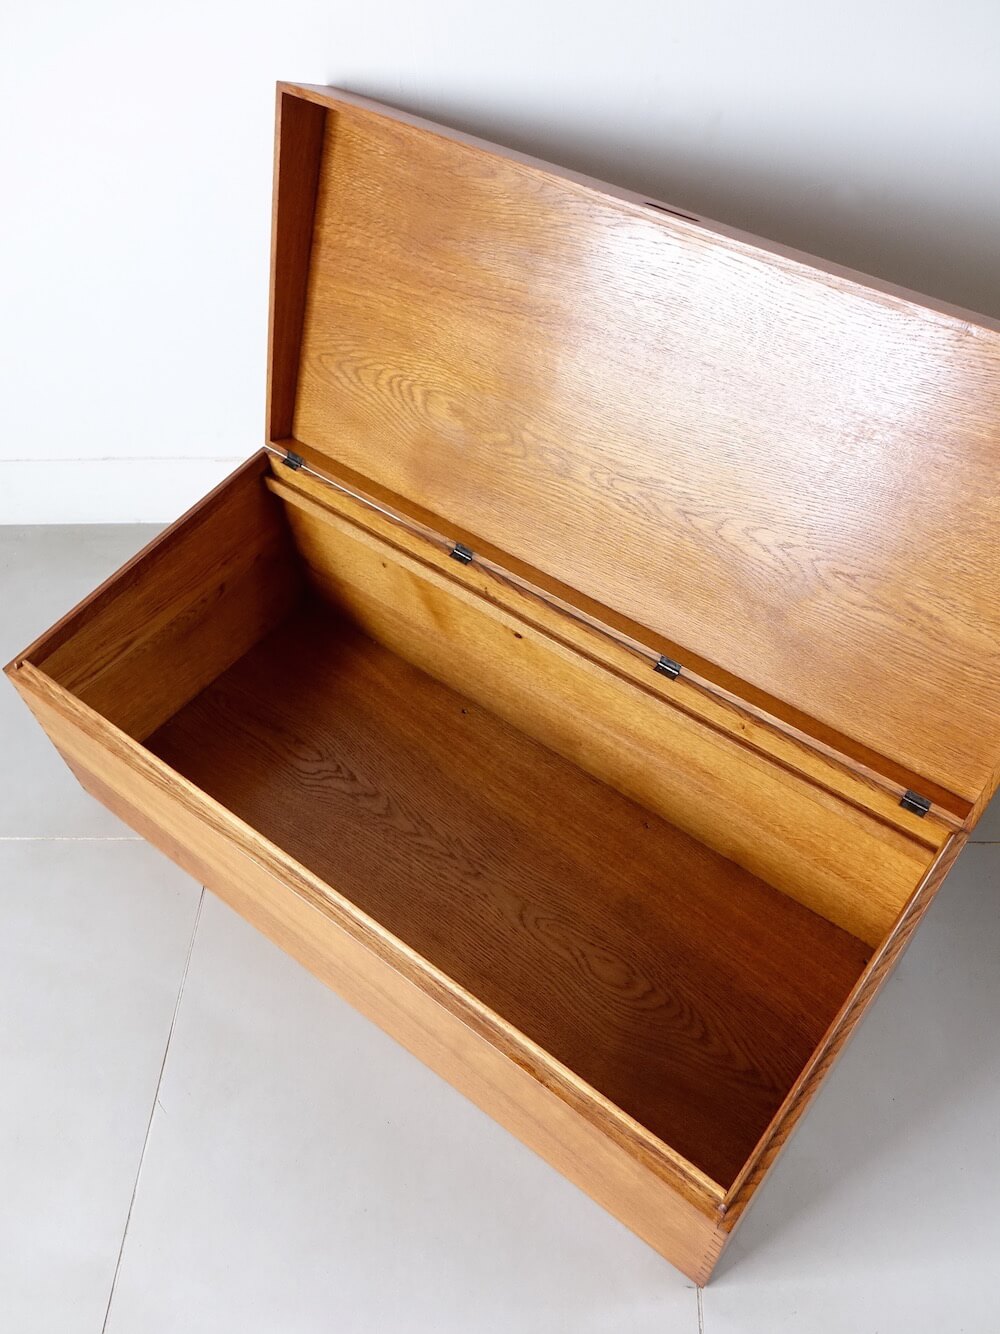 Oak Storage Box